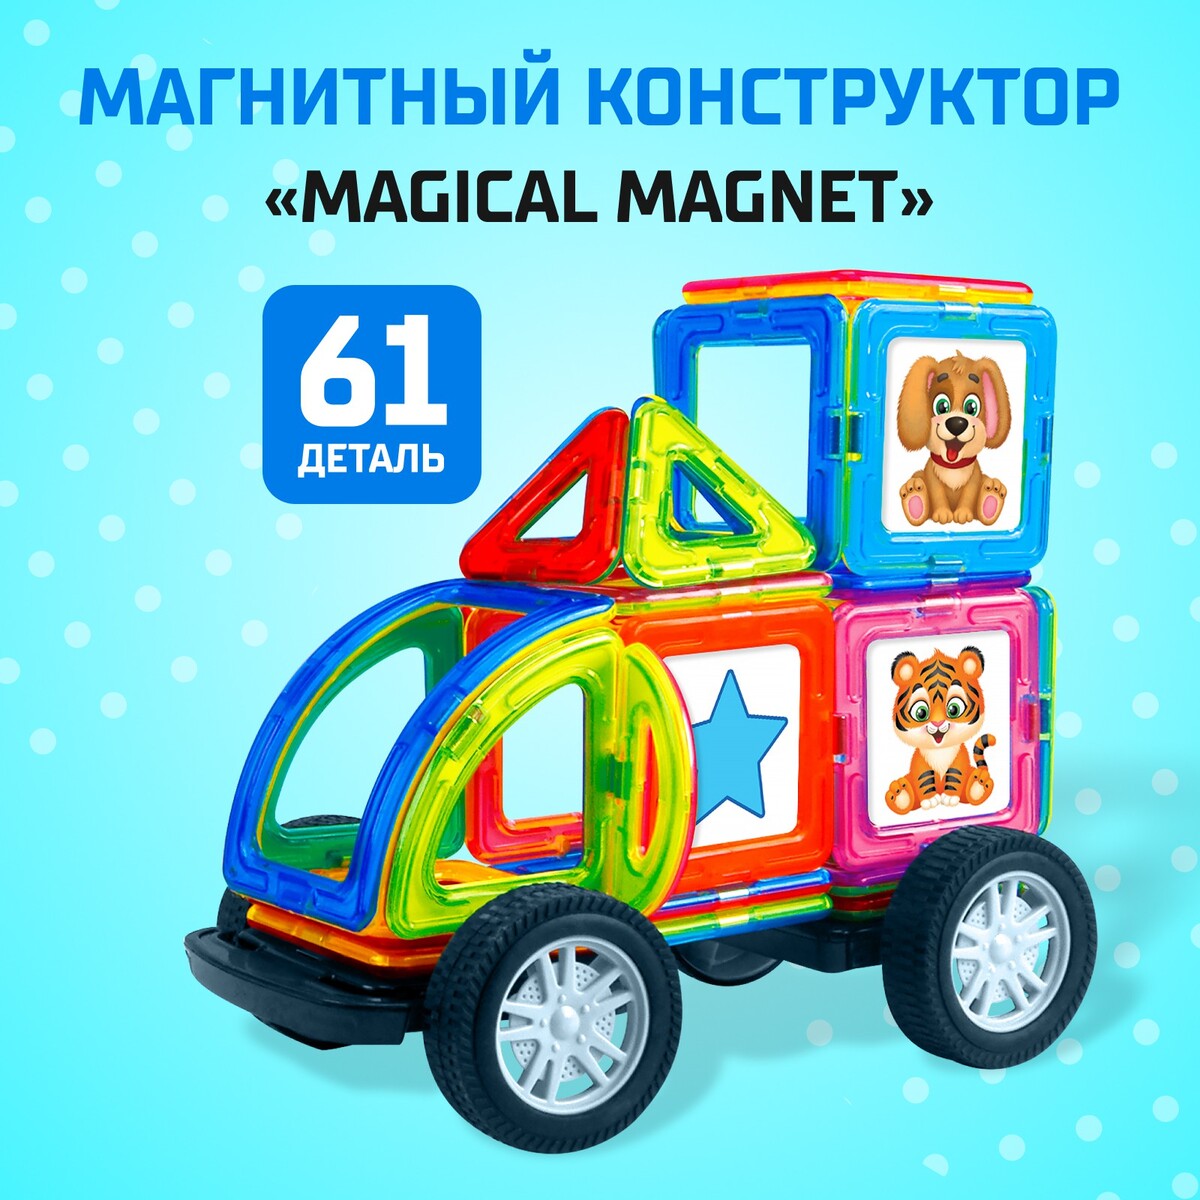 Магнитный конструктор magical magnet, 61 деталь, детали матовые конструктор магнитный 44 детали арт hd002